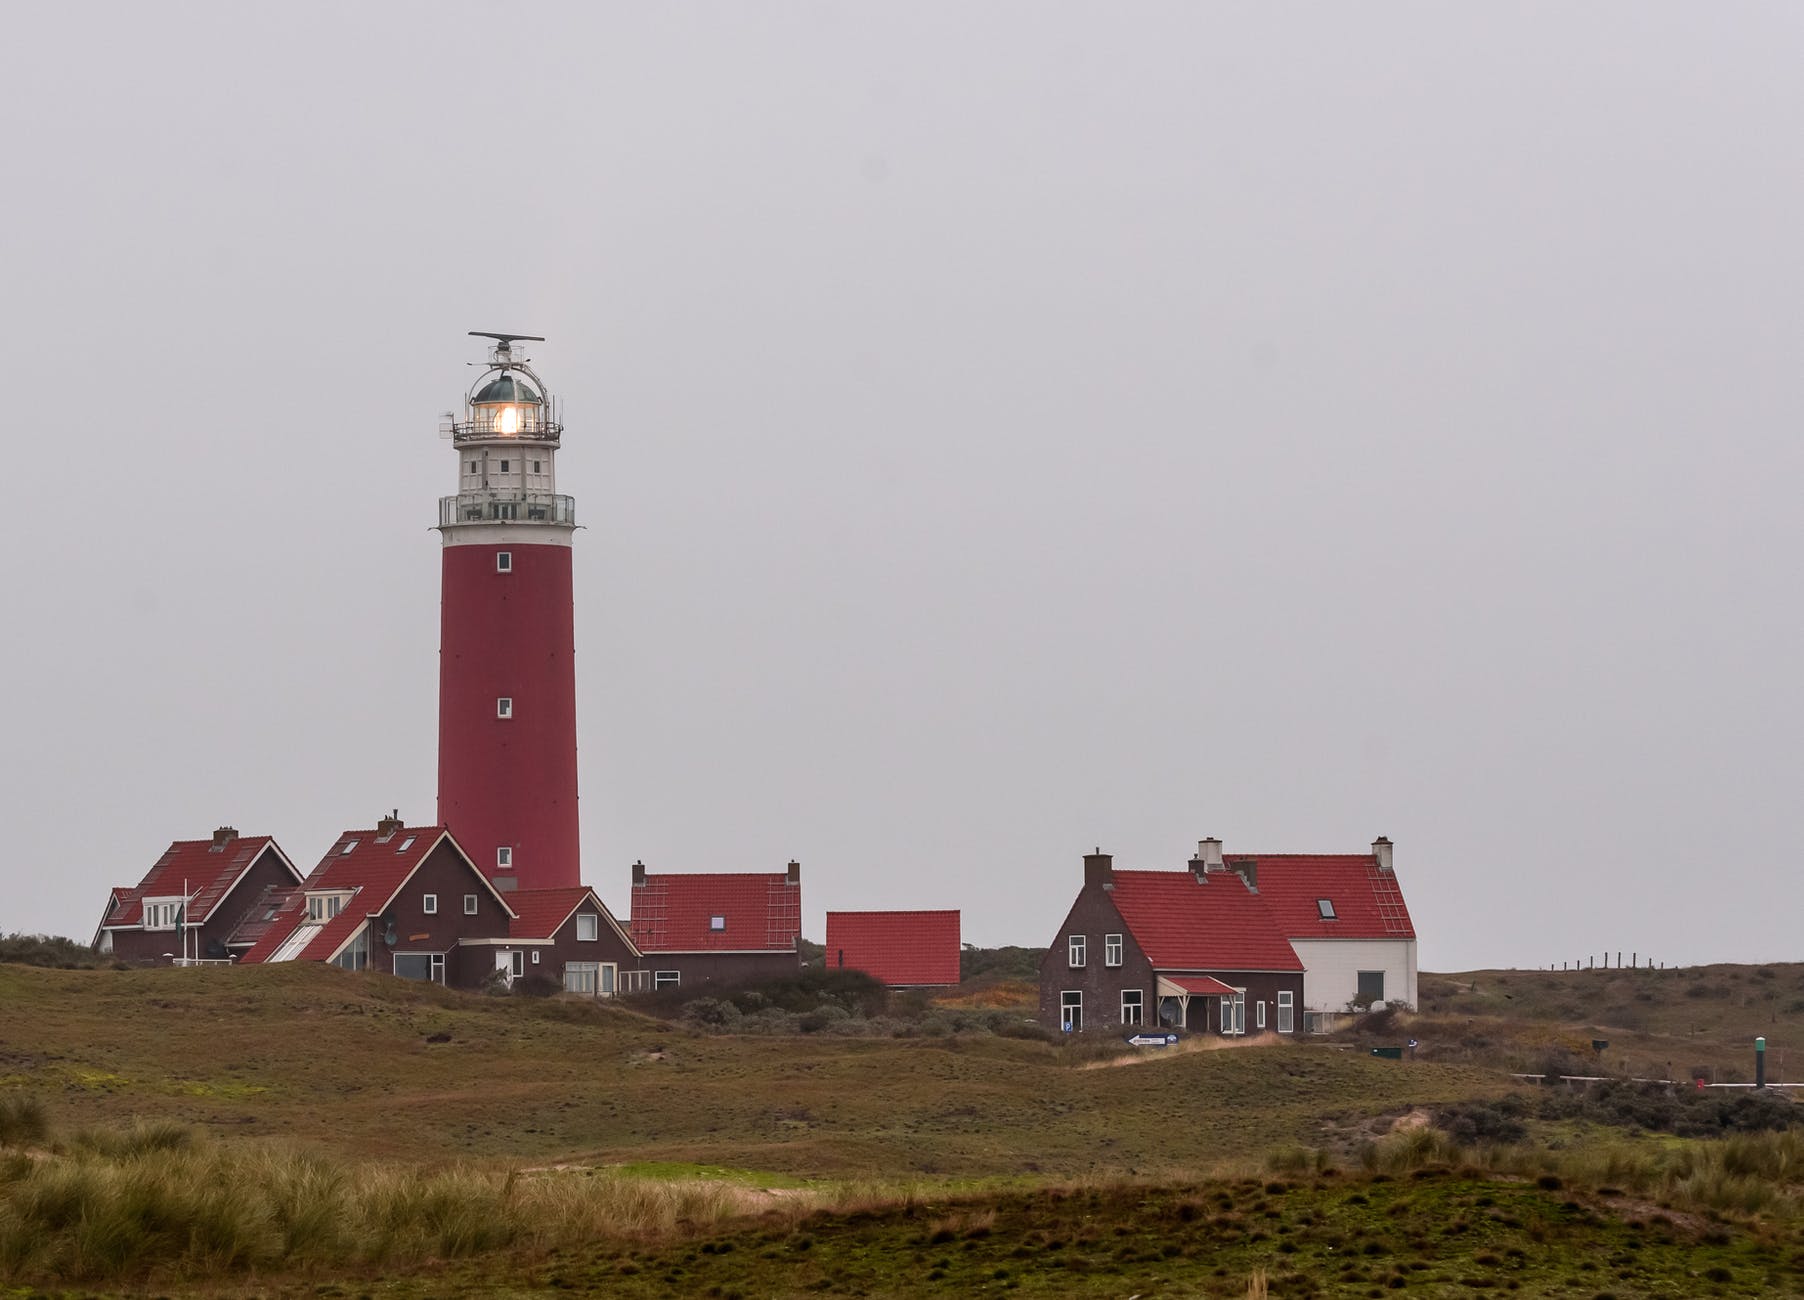 the eierland lighthouse in eierland texel netherlands